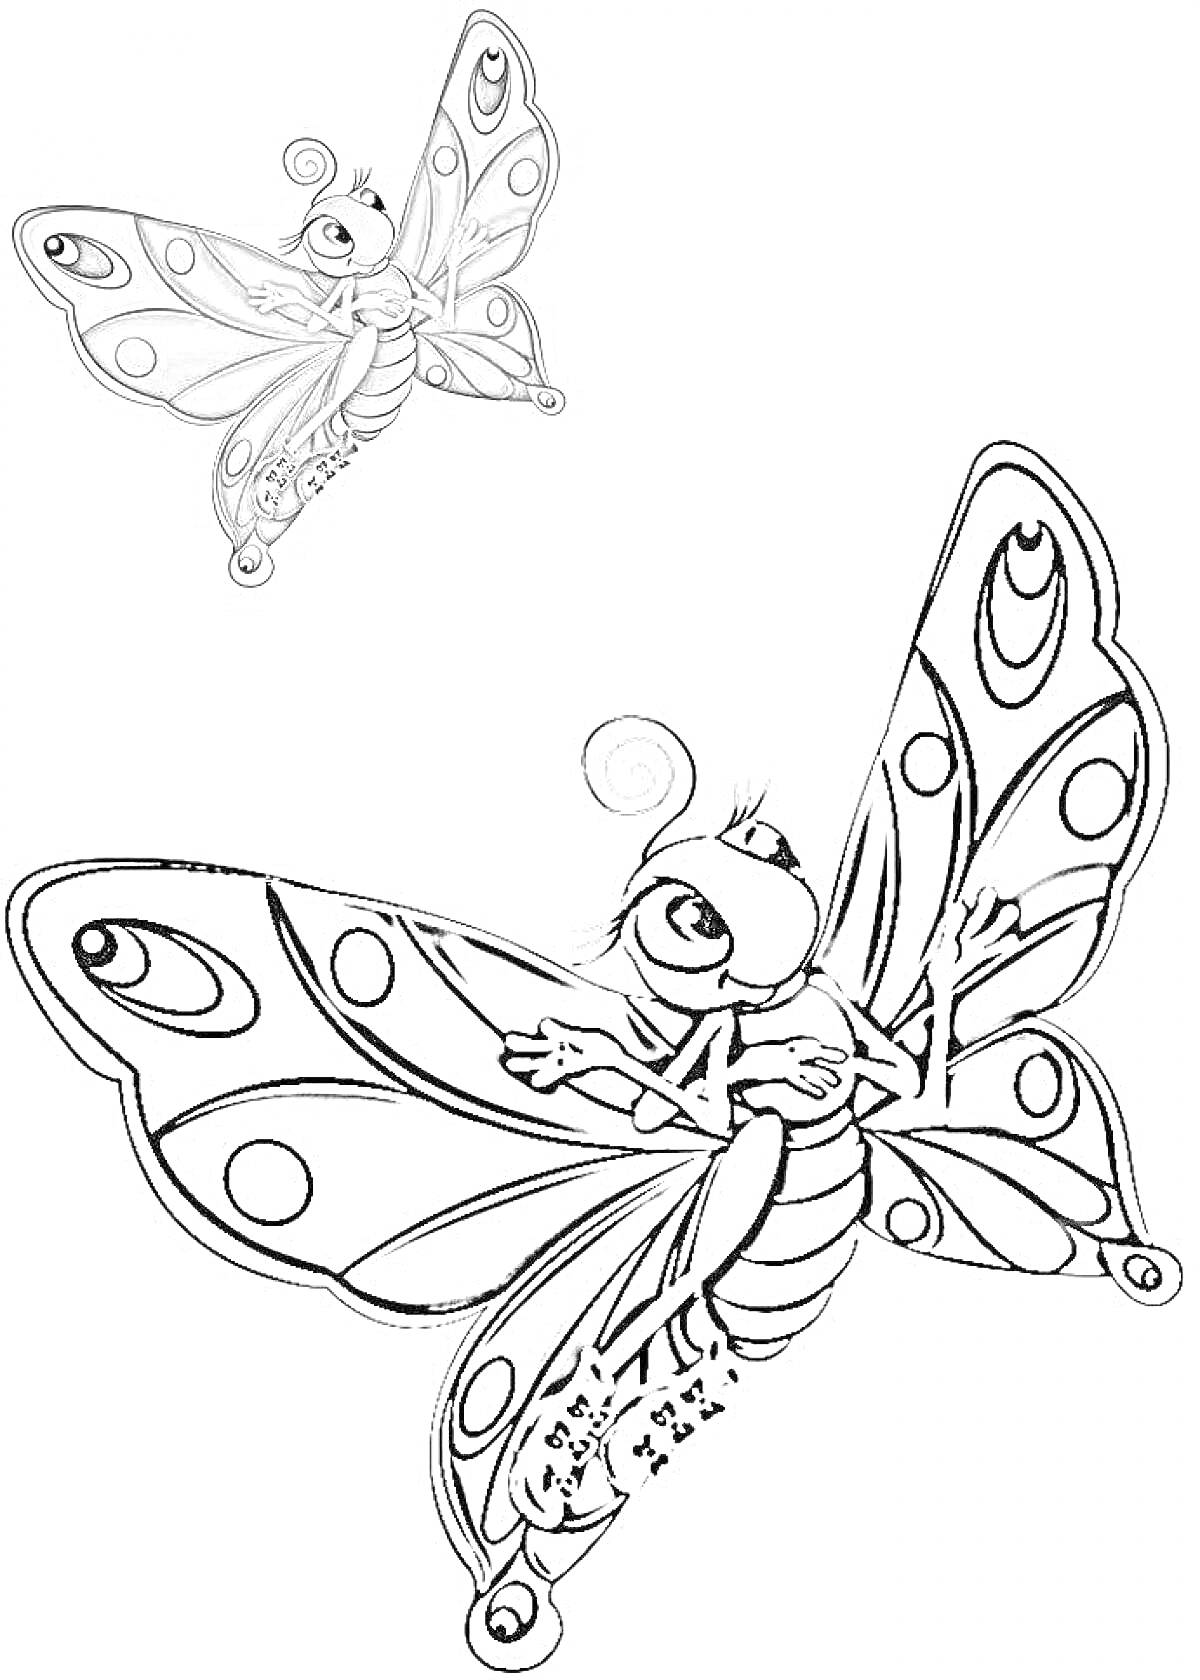 Бабочка с цветным образцом в левом верхнем углу и черно-белым контуром для раскрашивания